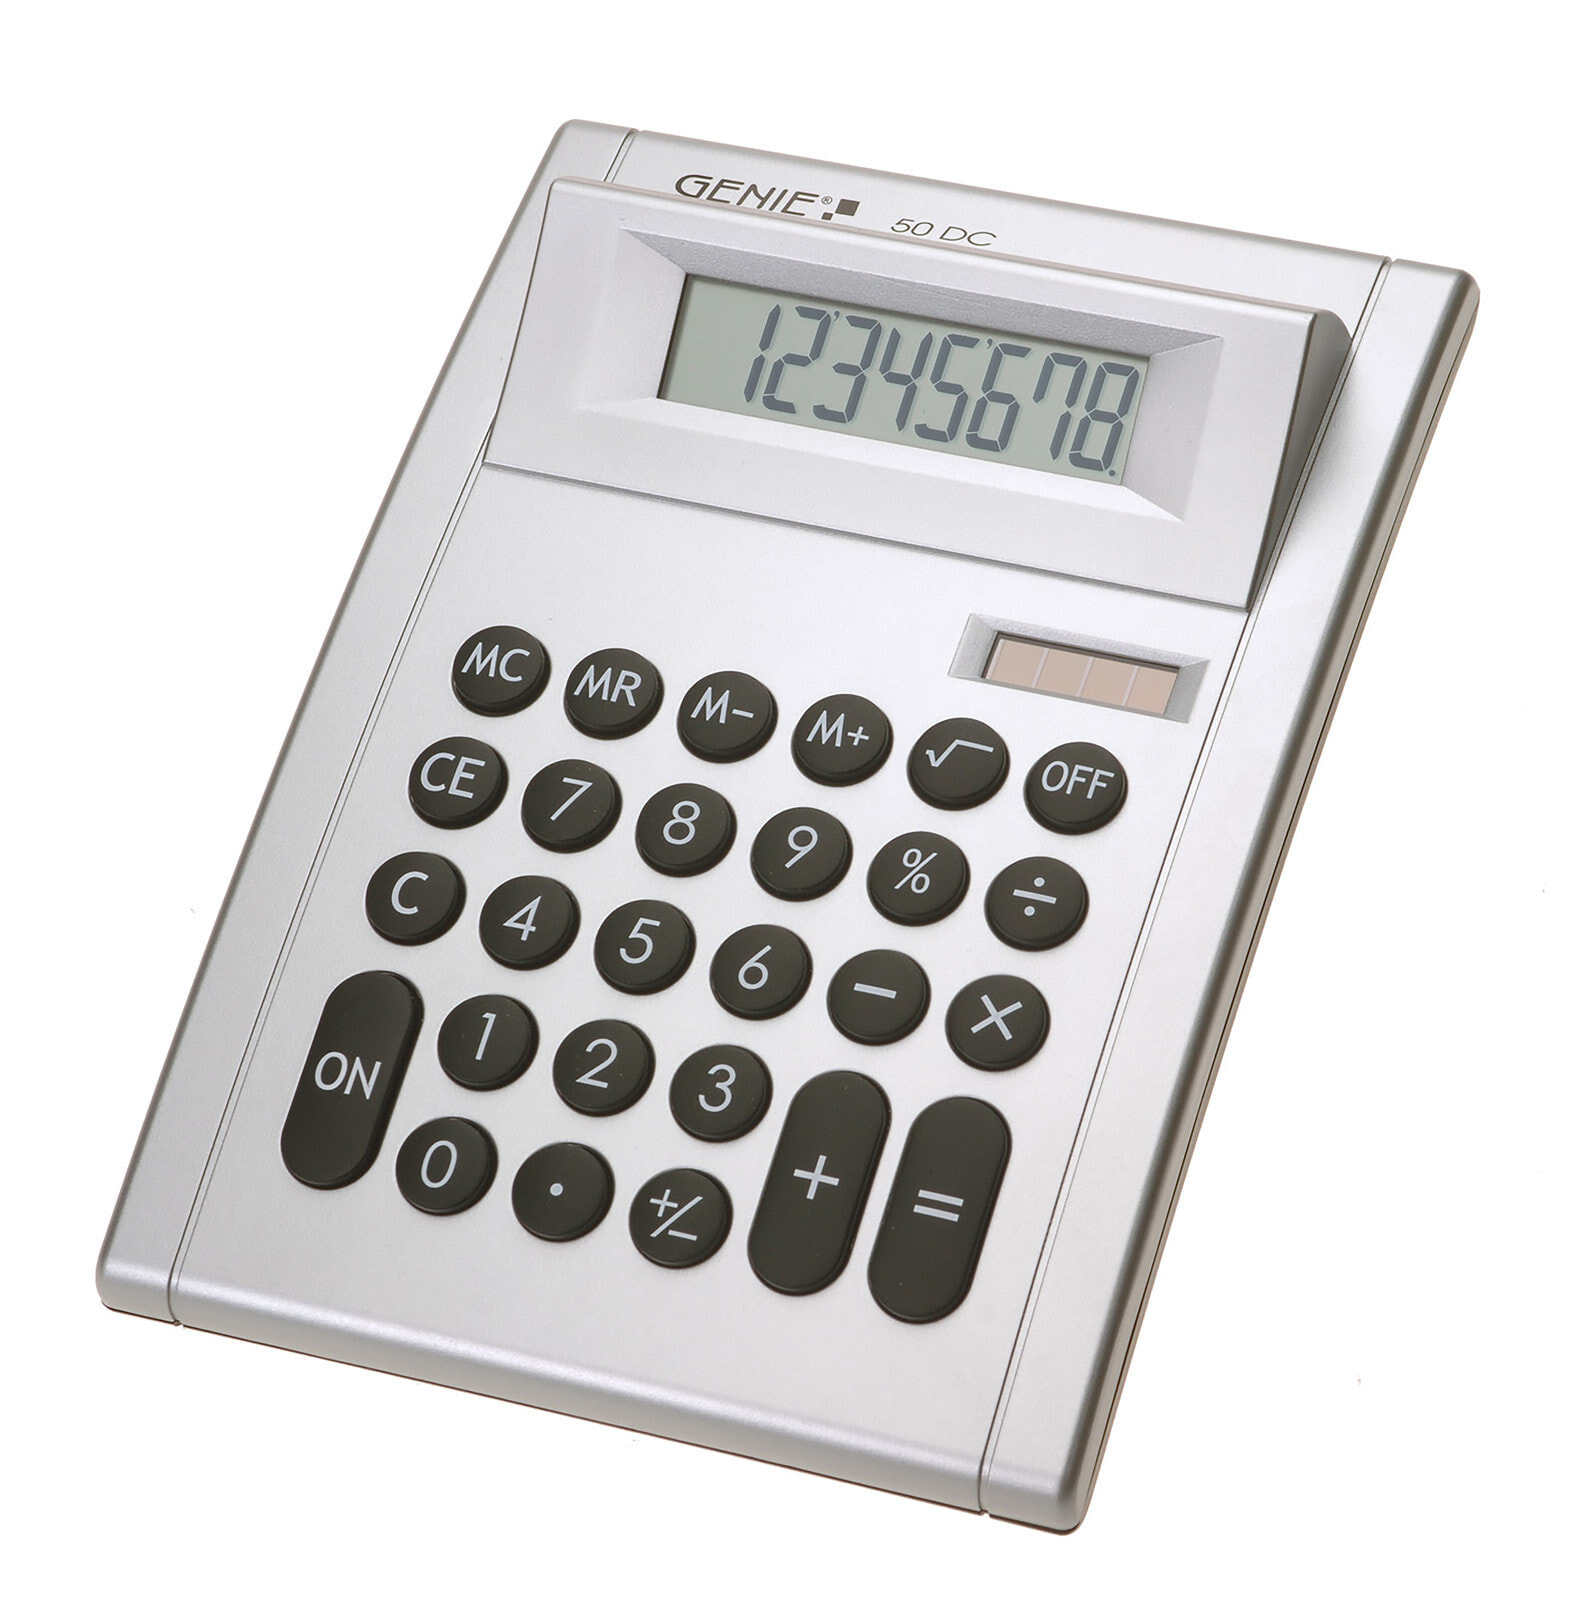 Genie 50 DC калькулятор Настольный Дисплей Серебристый 10932